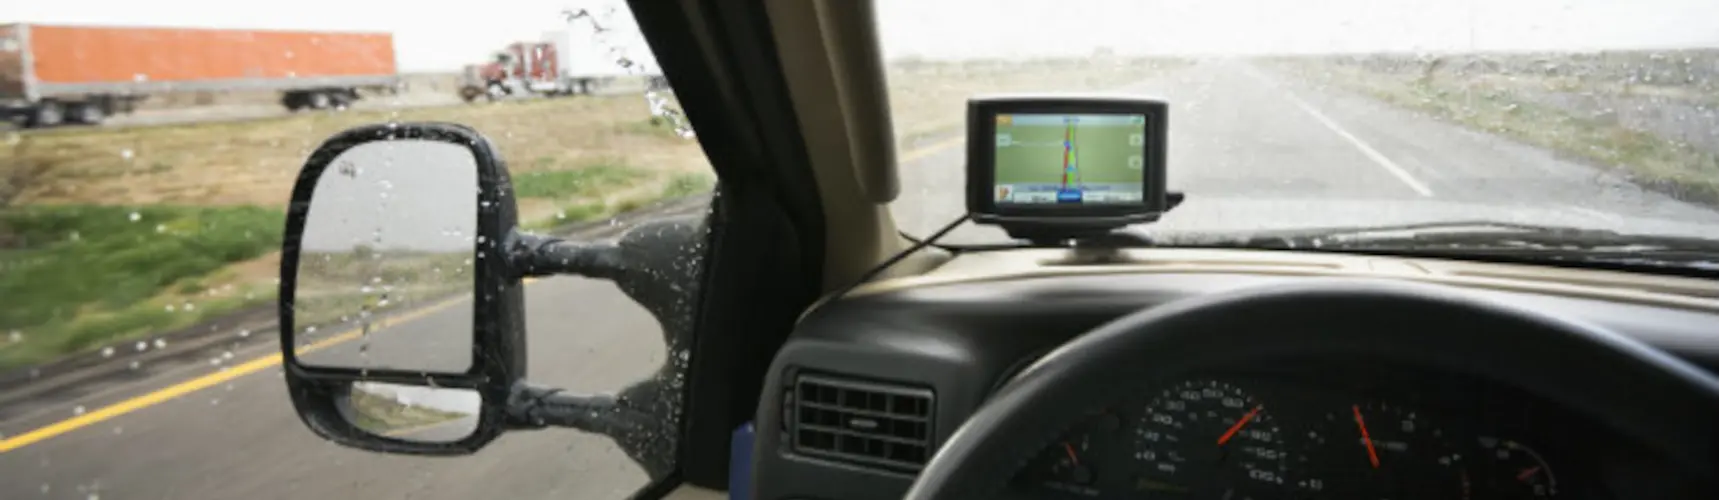 veículo com GPS para rastreamento veicular